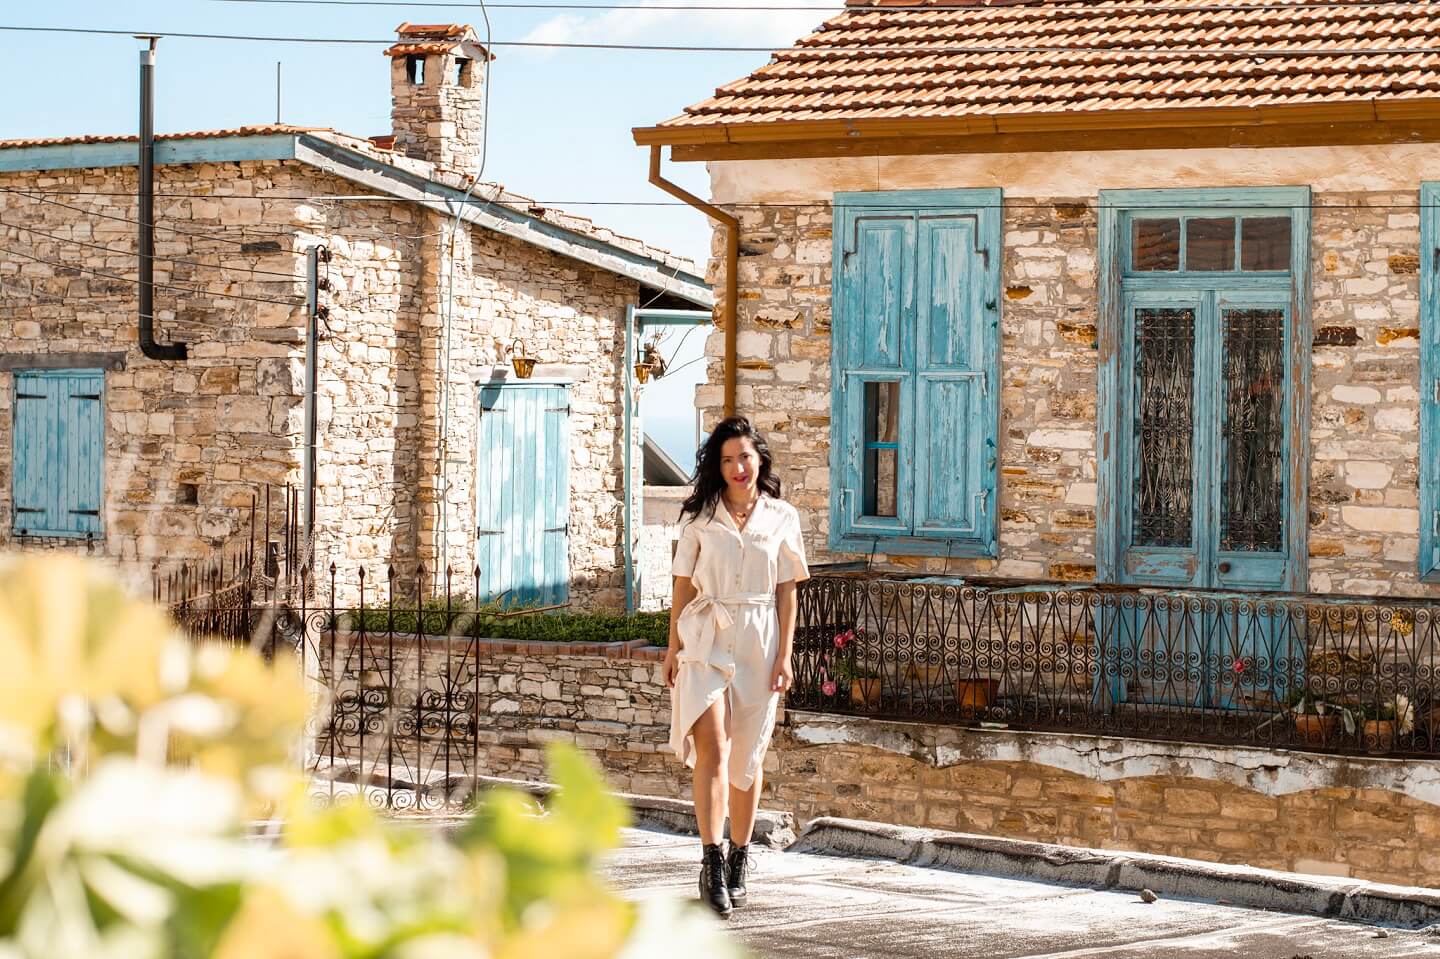 Cyprus Girl Walking in October